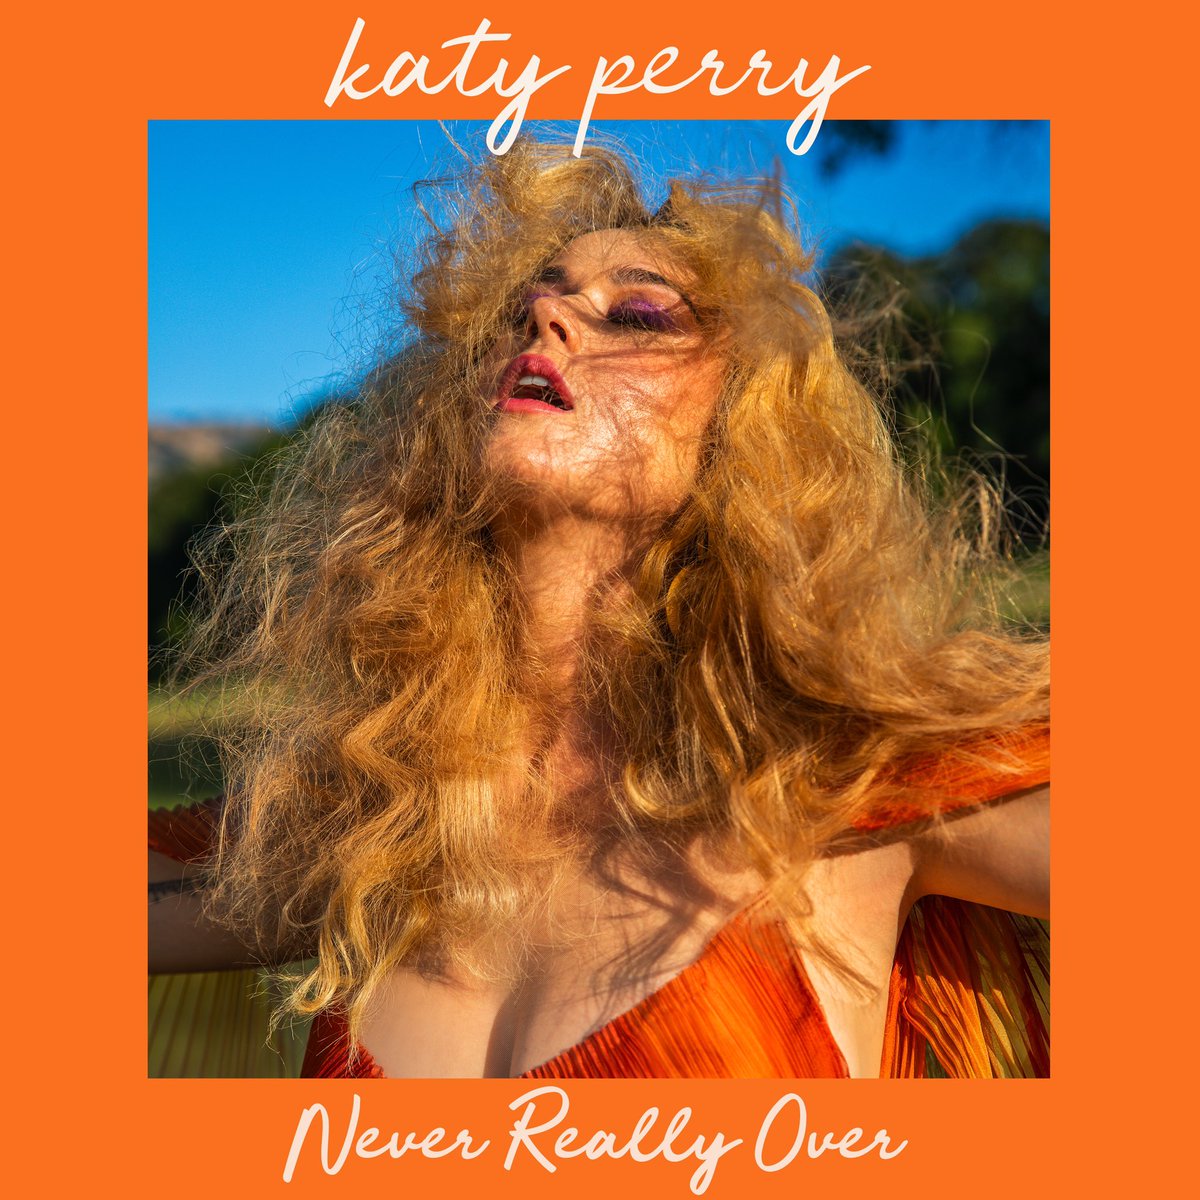 Katy Perry anuncia 'Never Really Over', nuevo single 1